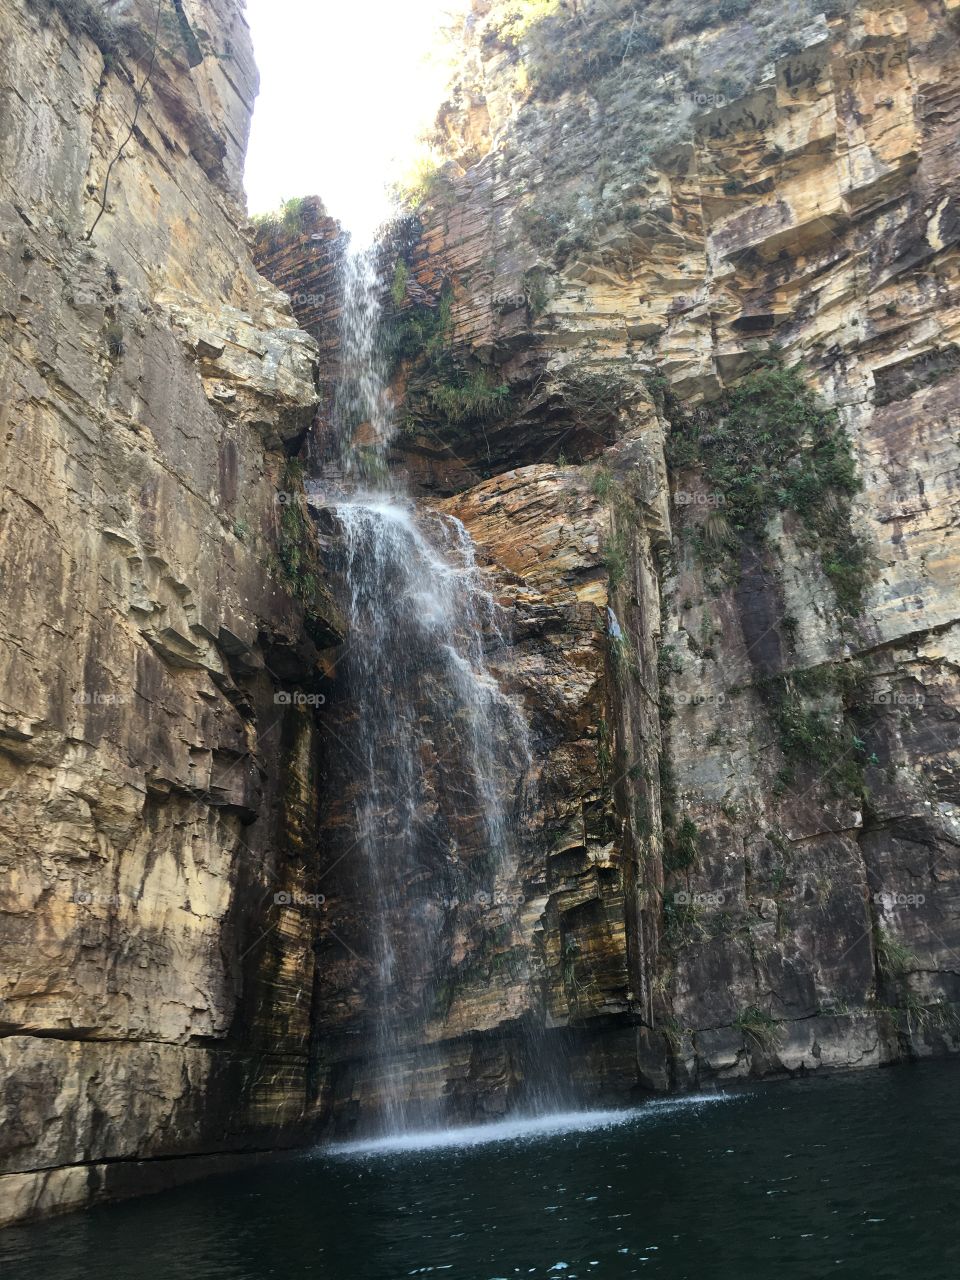  Waterfall Rock